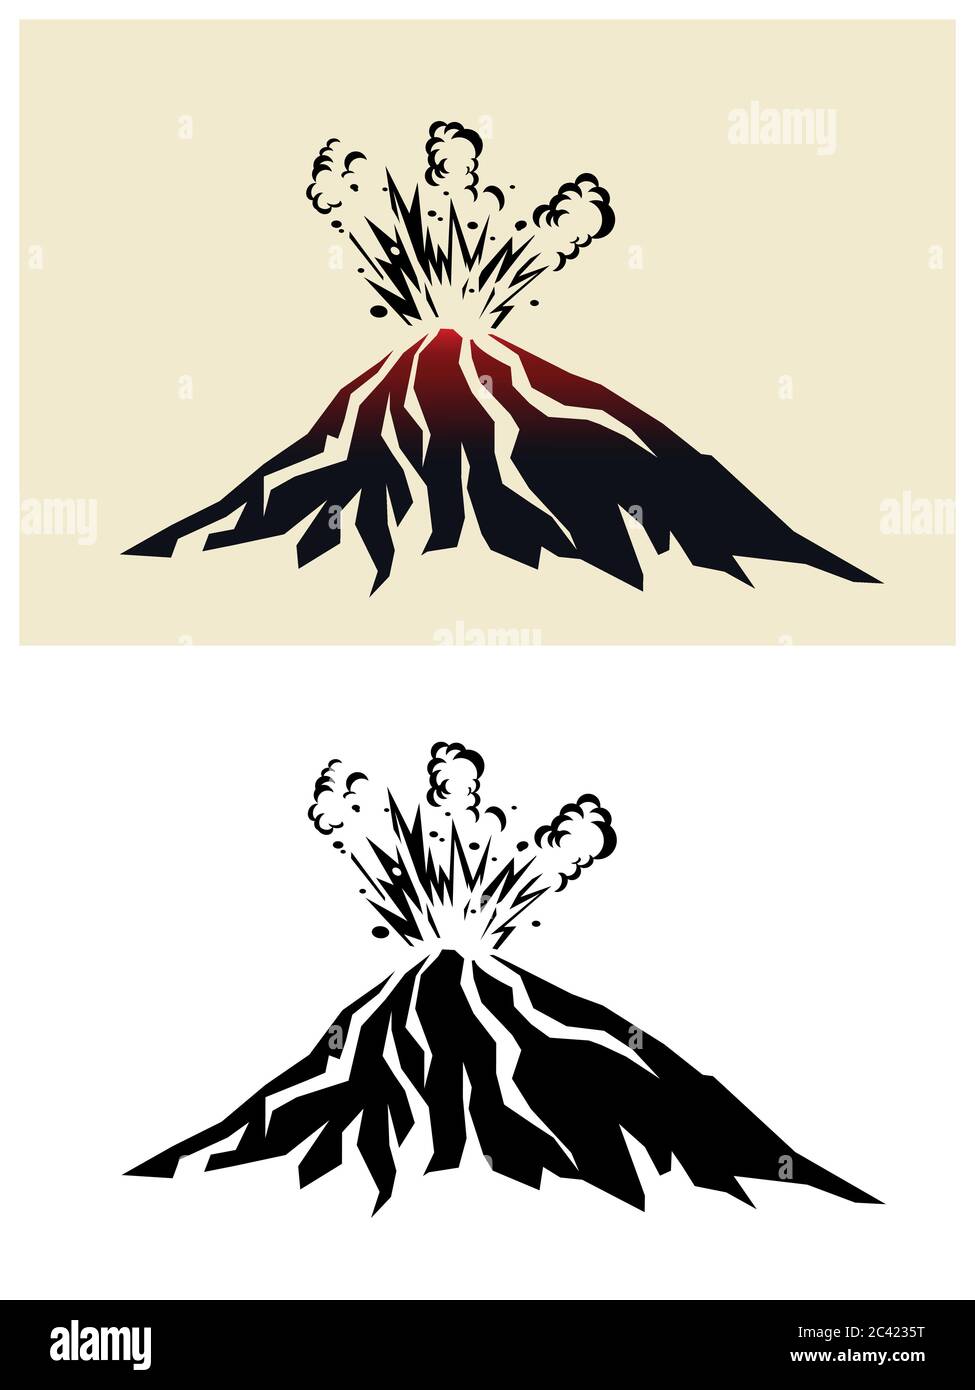 Ilustración estilizada de un volcán en erupción con nubes negras de humo Ilustración del Vector